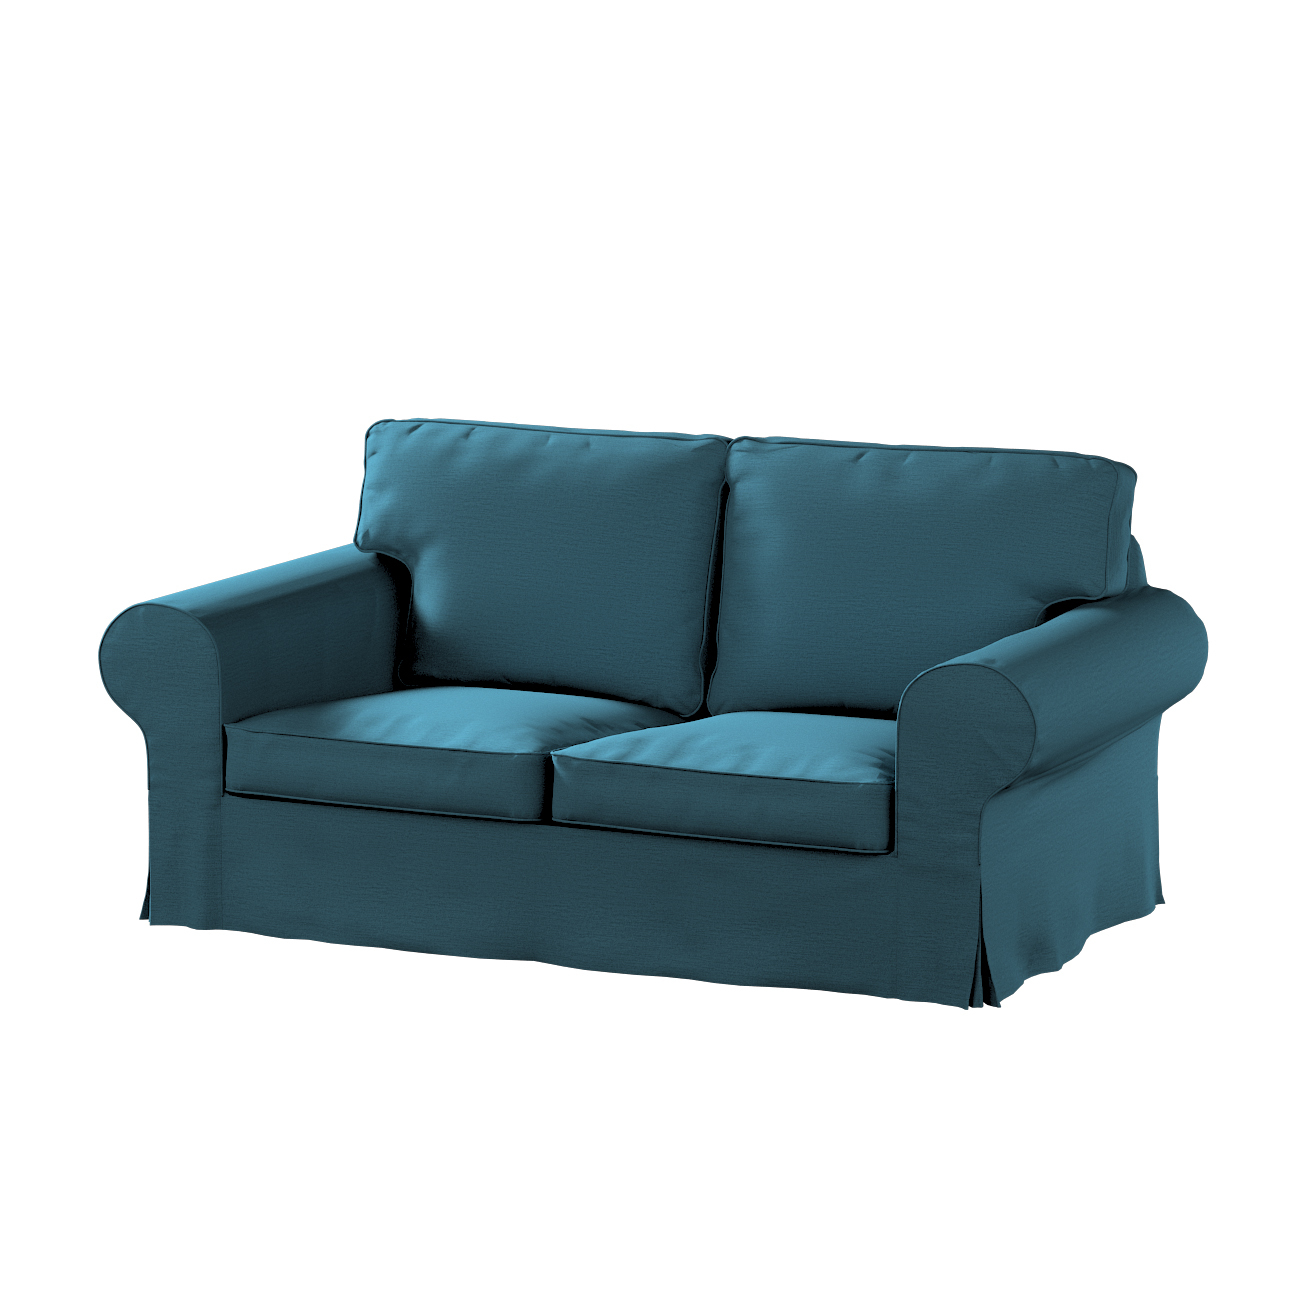 Bezug für Ektorp 2-Sitzer Schlafsofa NEUES Modell, dunkelblau, Sofabezug fü günstig online kaufen